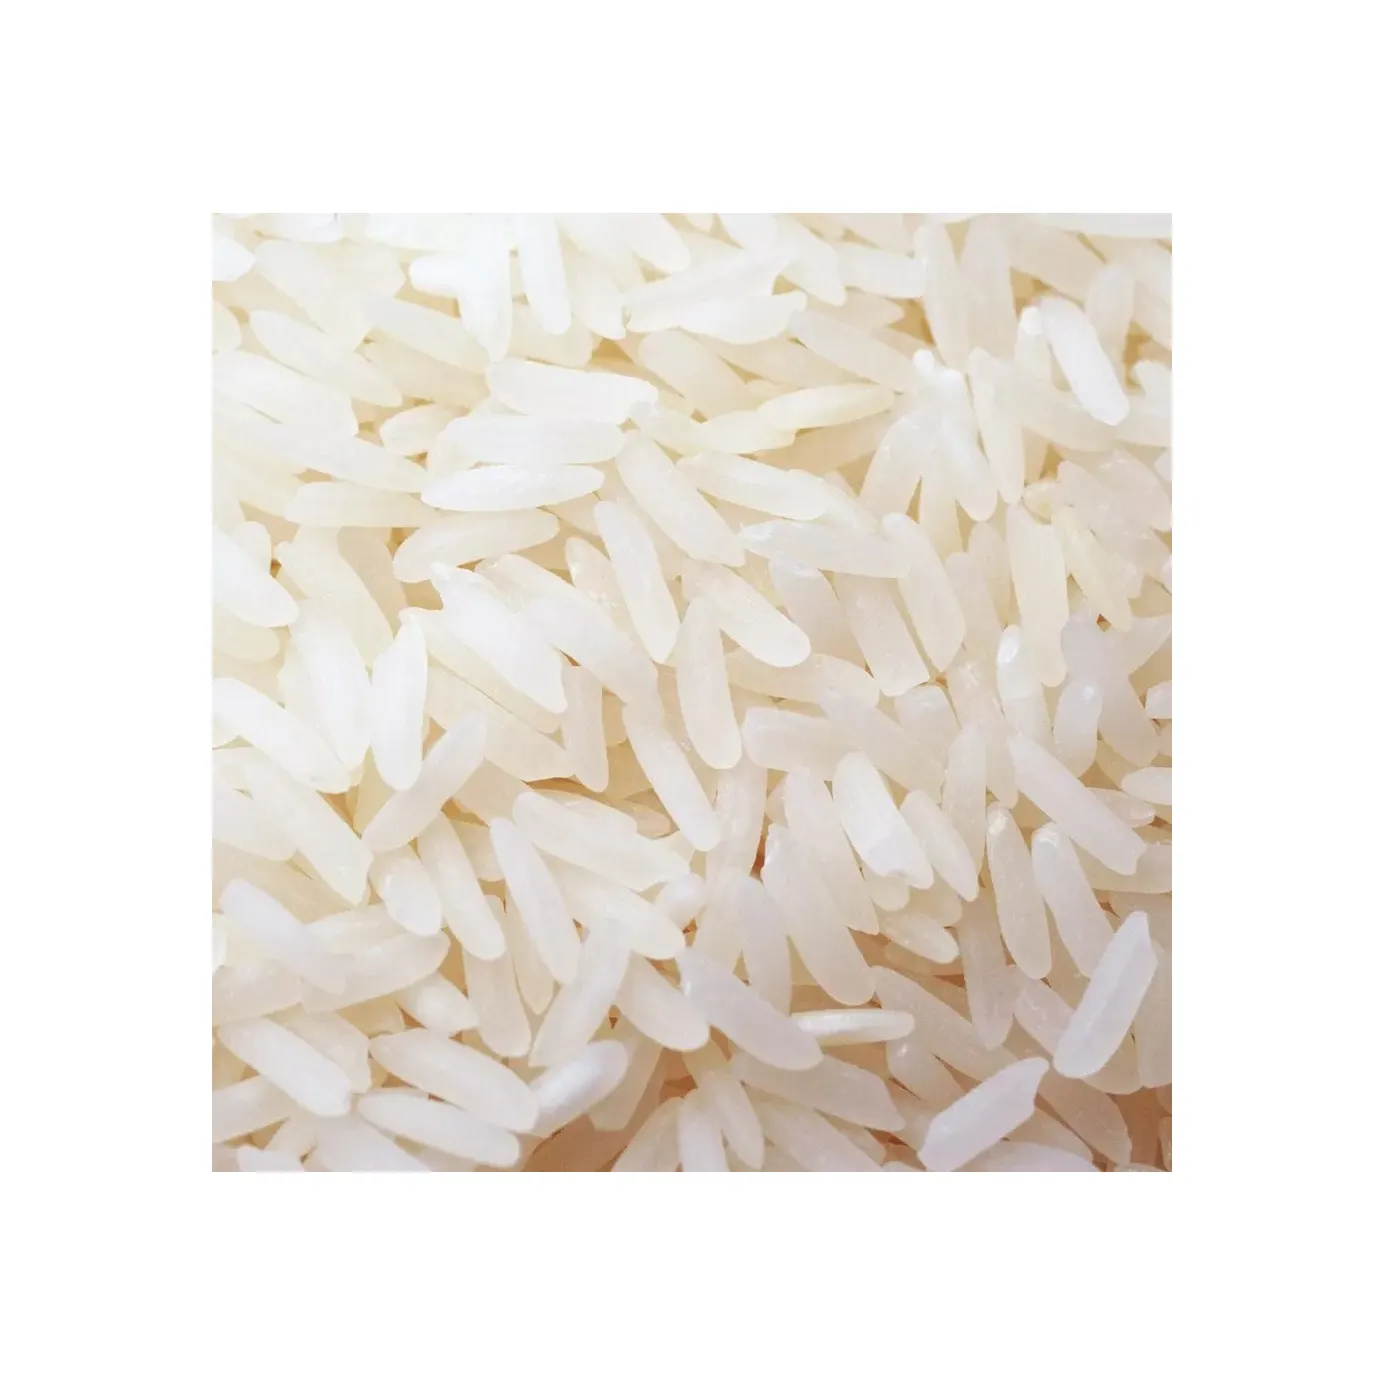 أرز ياسمين نقي 100% ذو جودة عالية/أرز طويل الحبوب مرشّى مع أرز أبيض طويل الحبوب مكسور بنسبة 5% أرز خالي من الادوات المضغوطة يمتد حتى 24 شهرًا